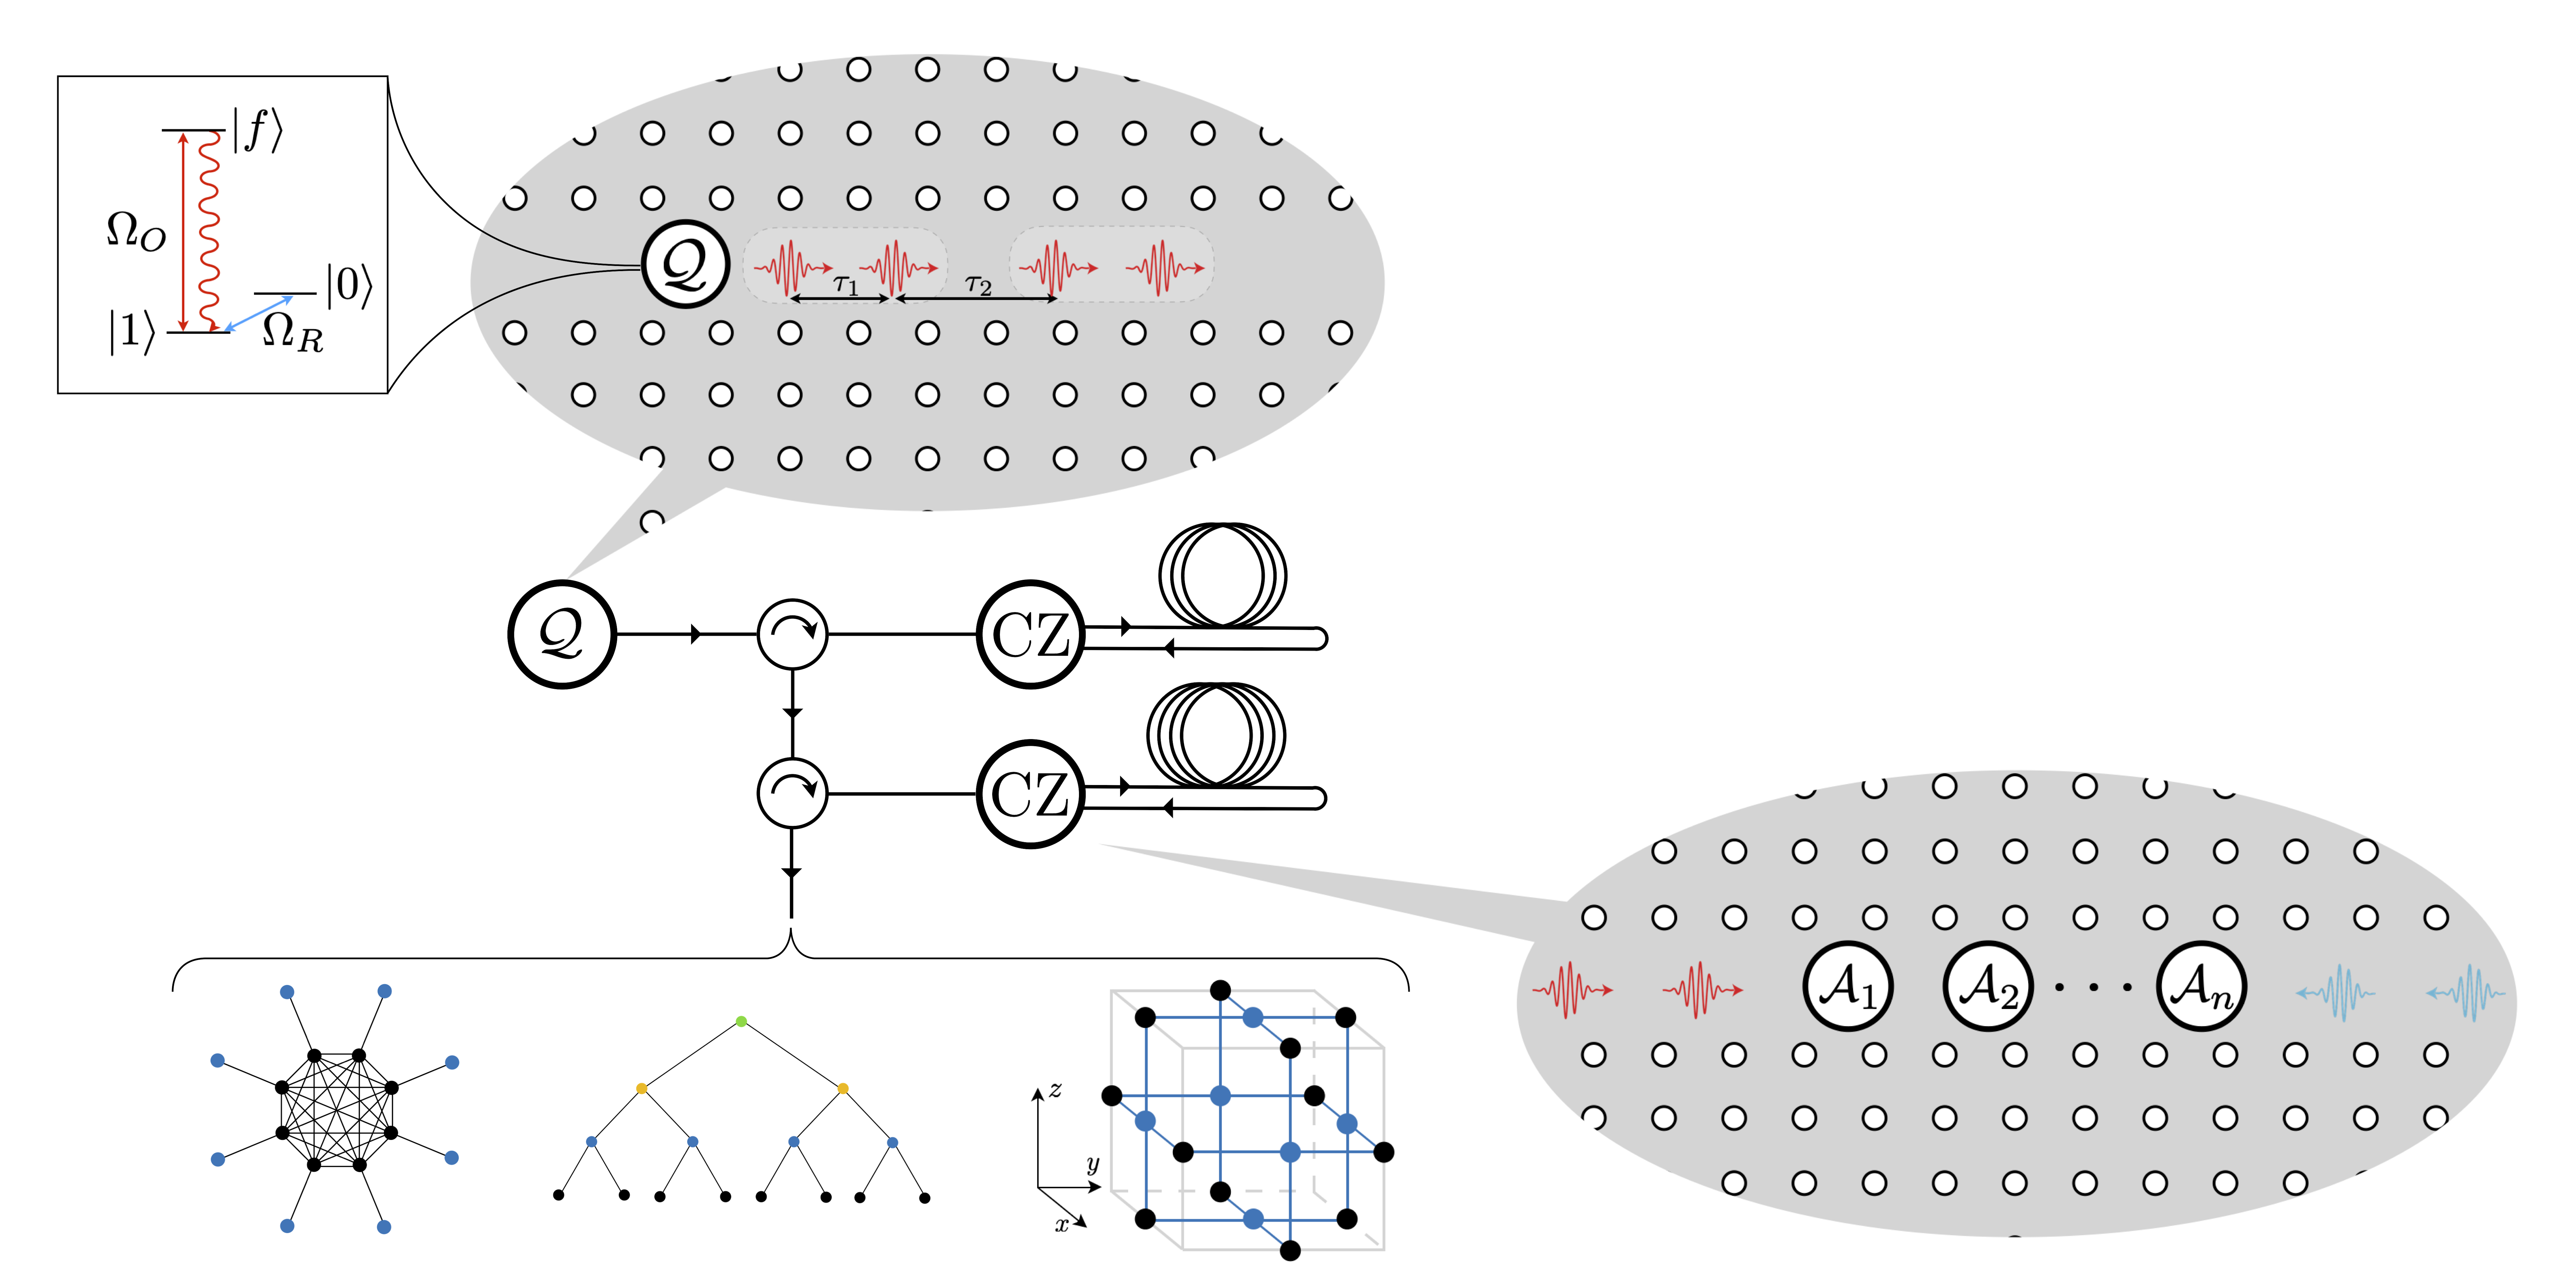 Arquiteturas modulares para gerar estados grafos de forma determinista